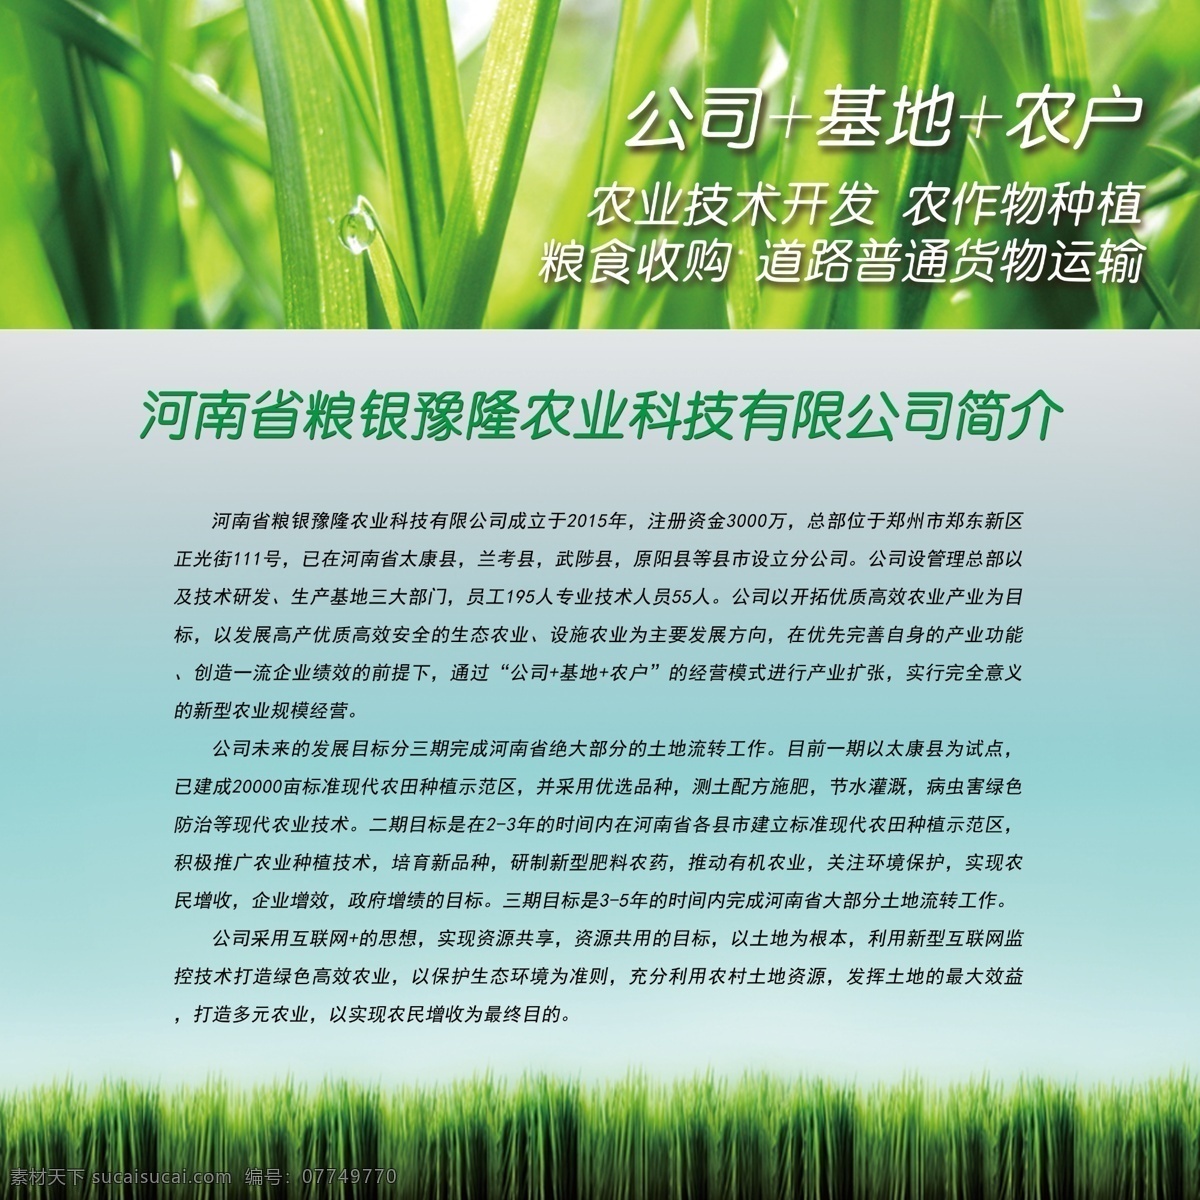 农业科技展板 农业科技海报 农业 科技园 养殖 展板 绿色 背景 生态农业展板